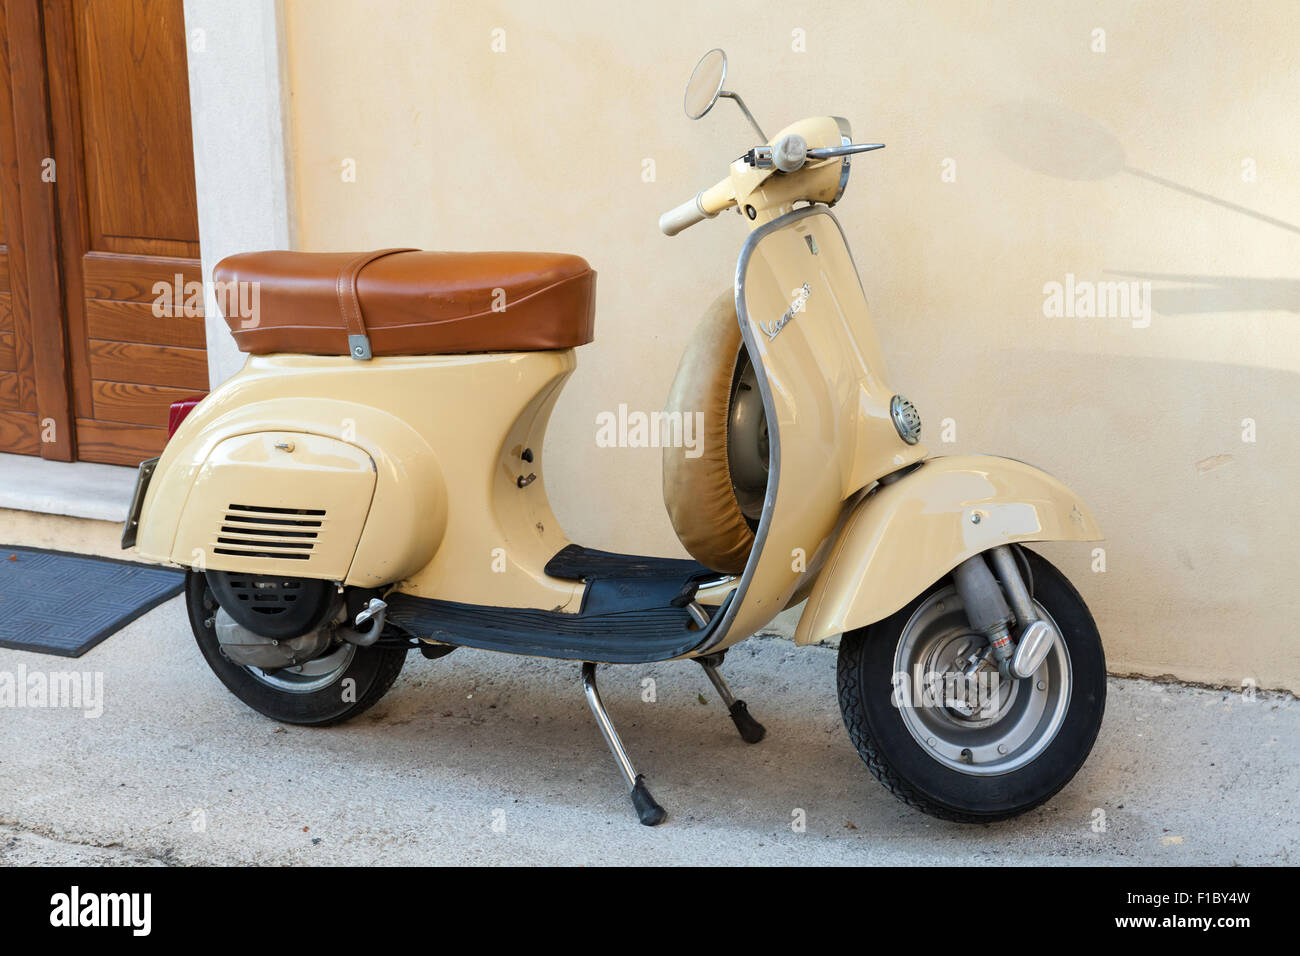 Gaeta, Italia - 19 agosto 2015: Classica giallo scooter Vespa parcheggiata sorge in prossimità della parete Foto Stock